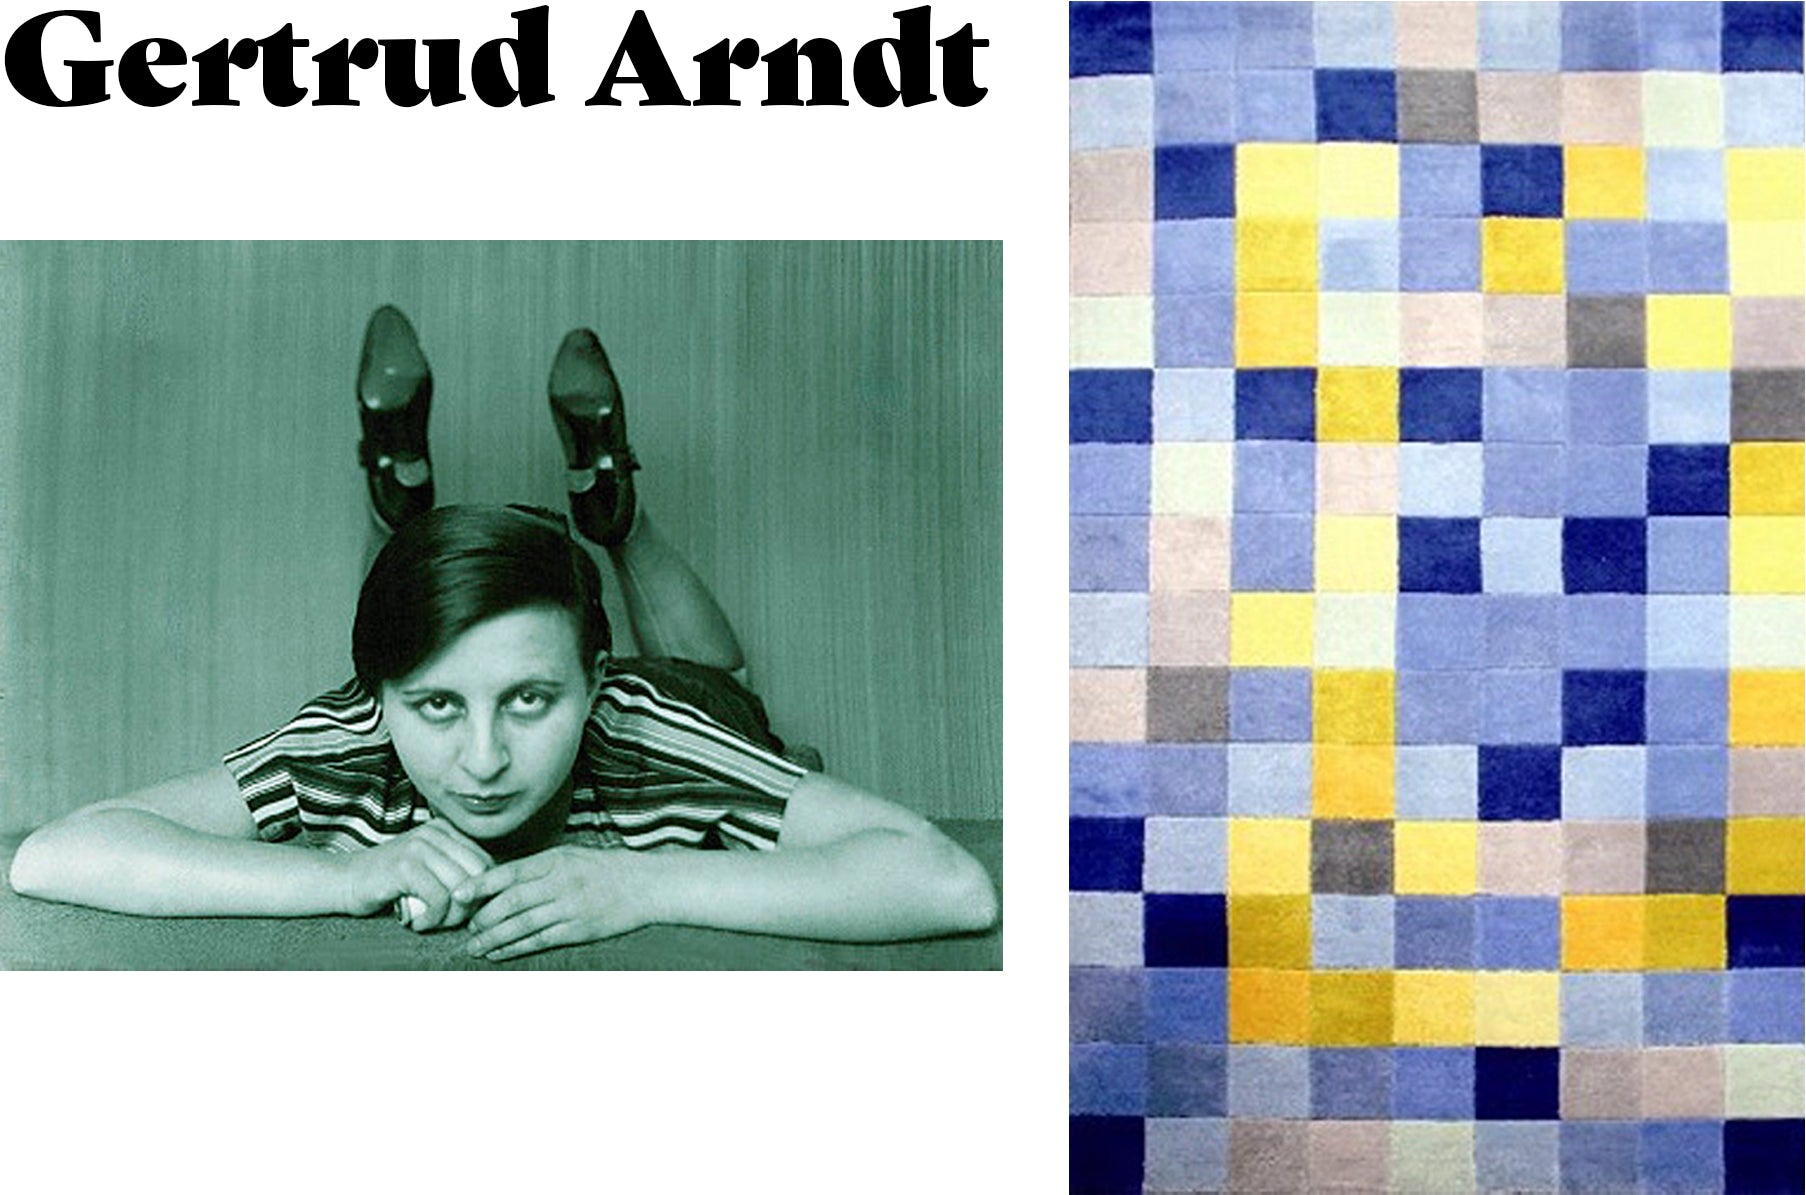 Gertrud Arndt día de la madre 2019 inspiración diseño textil